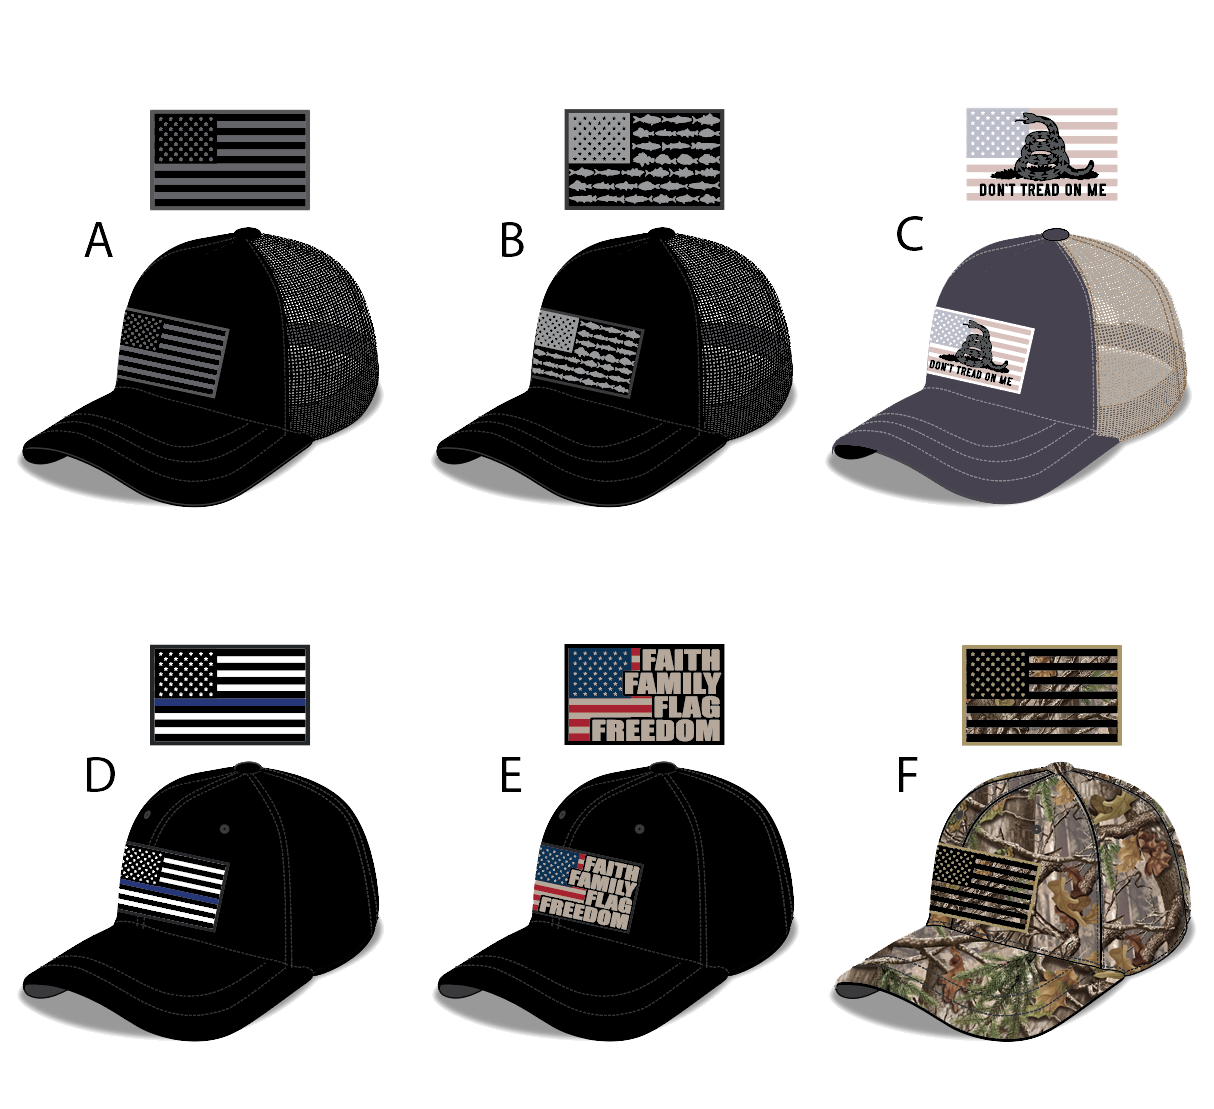 ITEM NUMBER 023505 AMERICAN FLAG BALL CAP HATS 6 PIECES PER DISPLAY